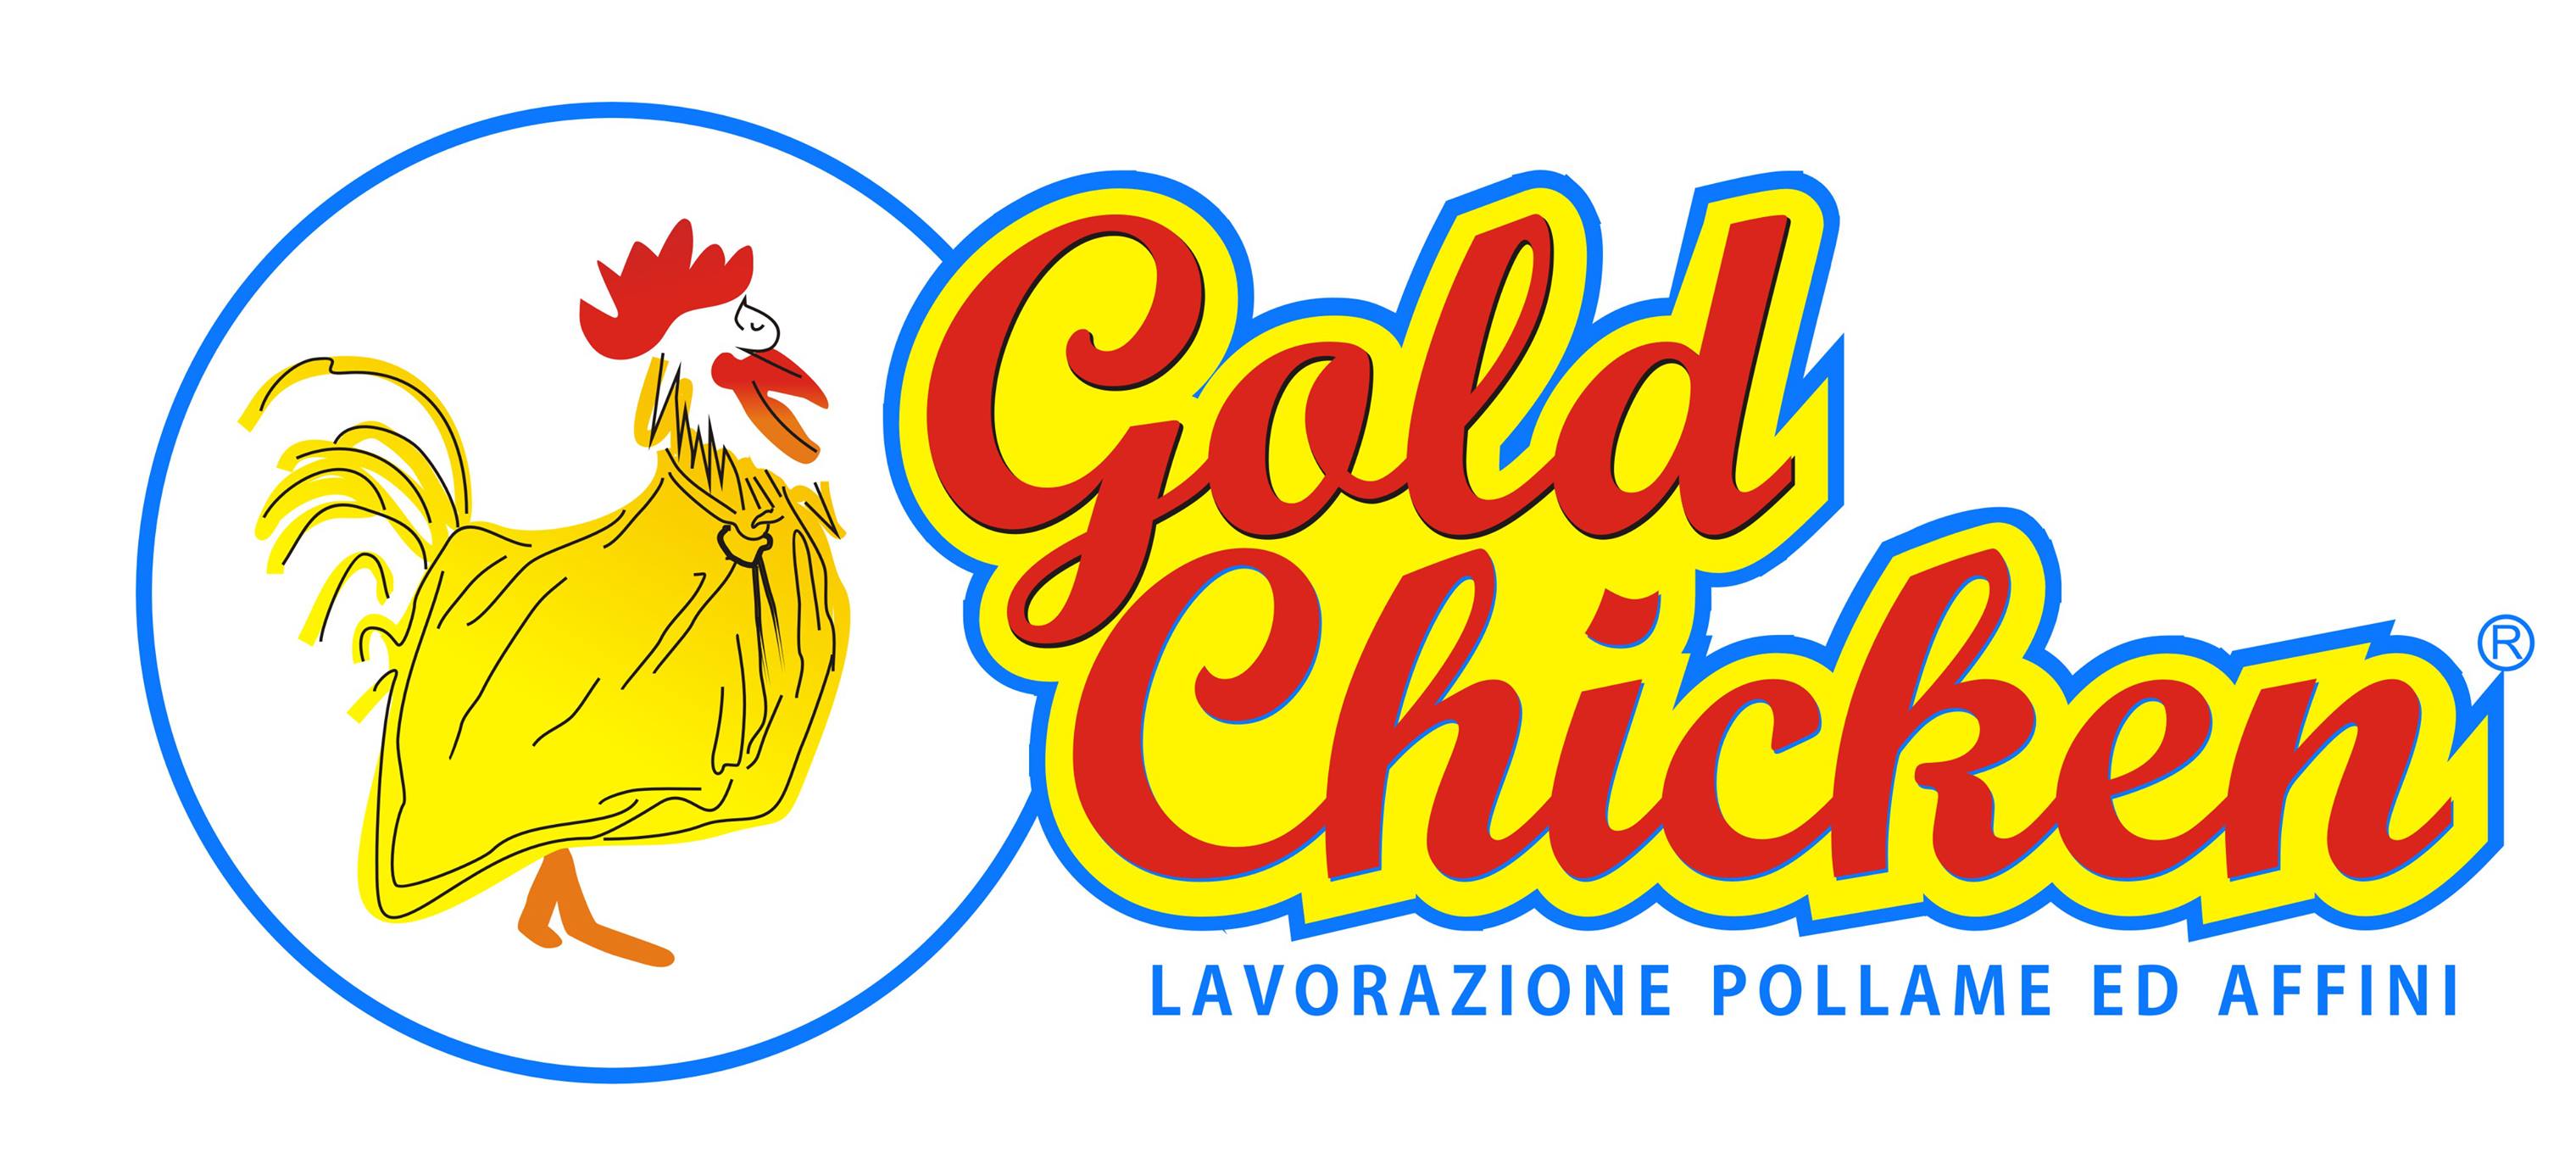 SPONSOR Gold Chicken